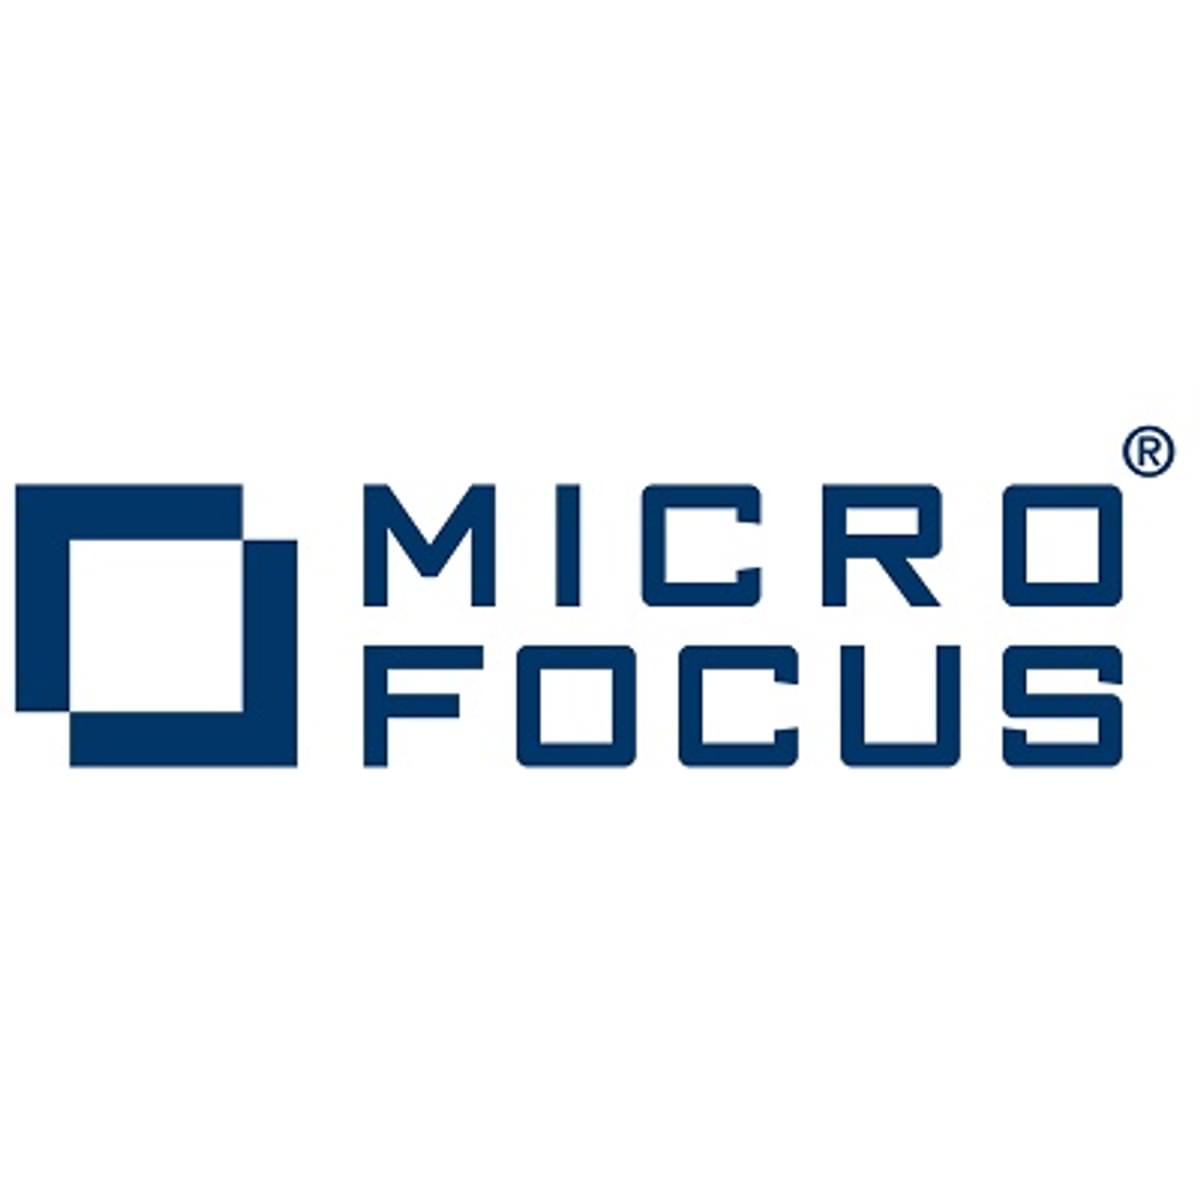 Micro Focus tweakt partnerprogramma en lanceert nieuw partnerportal image